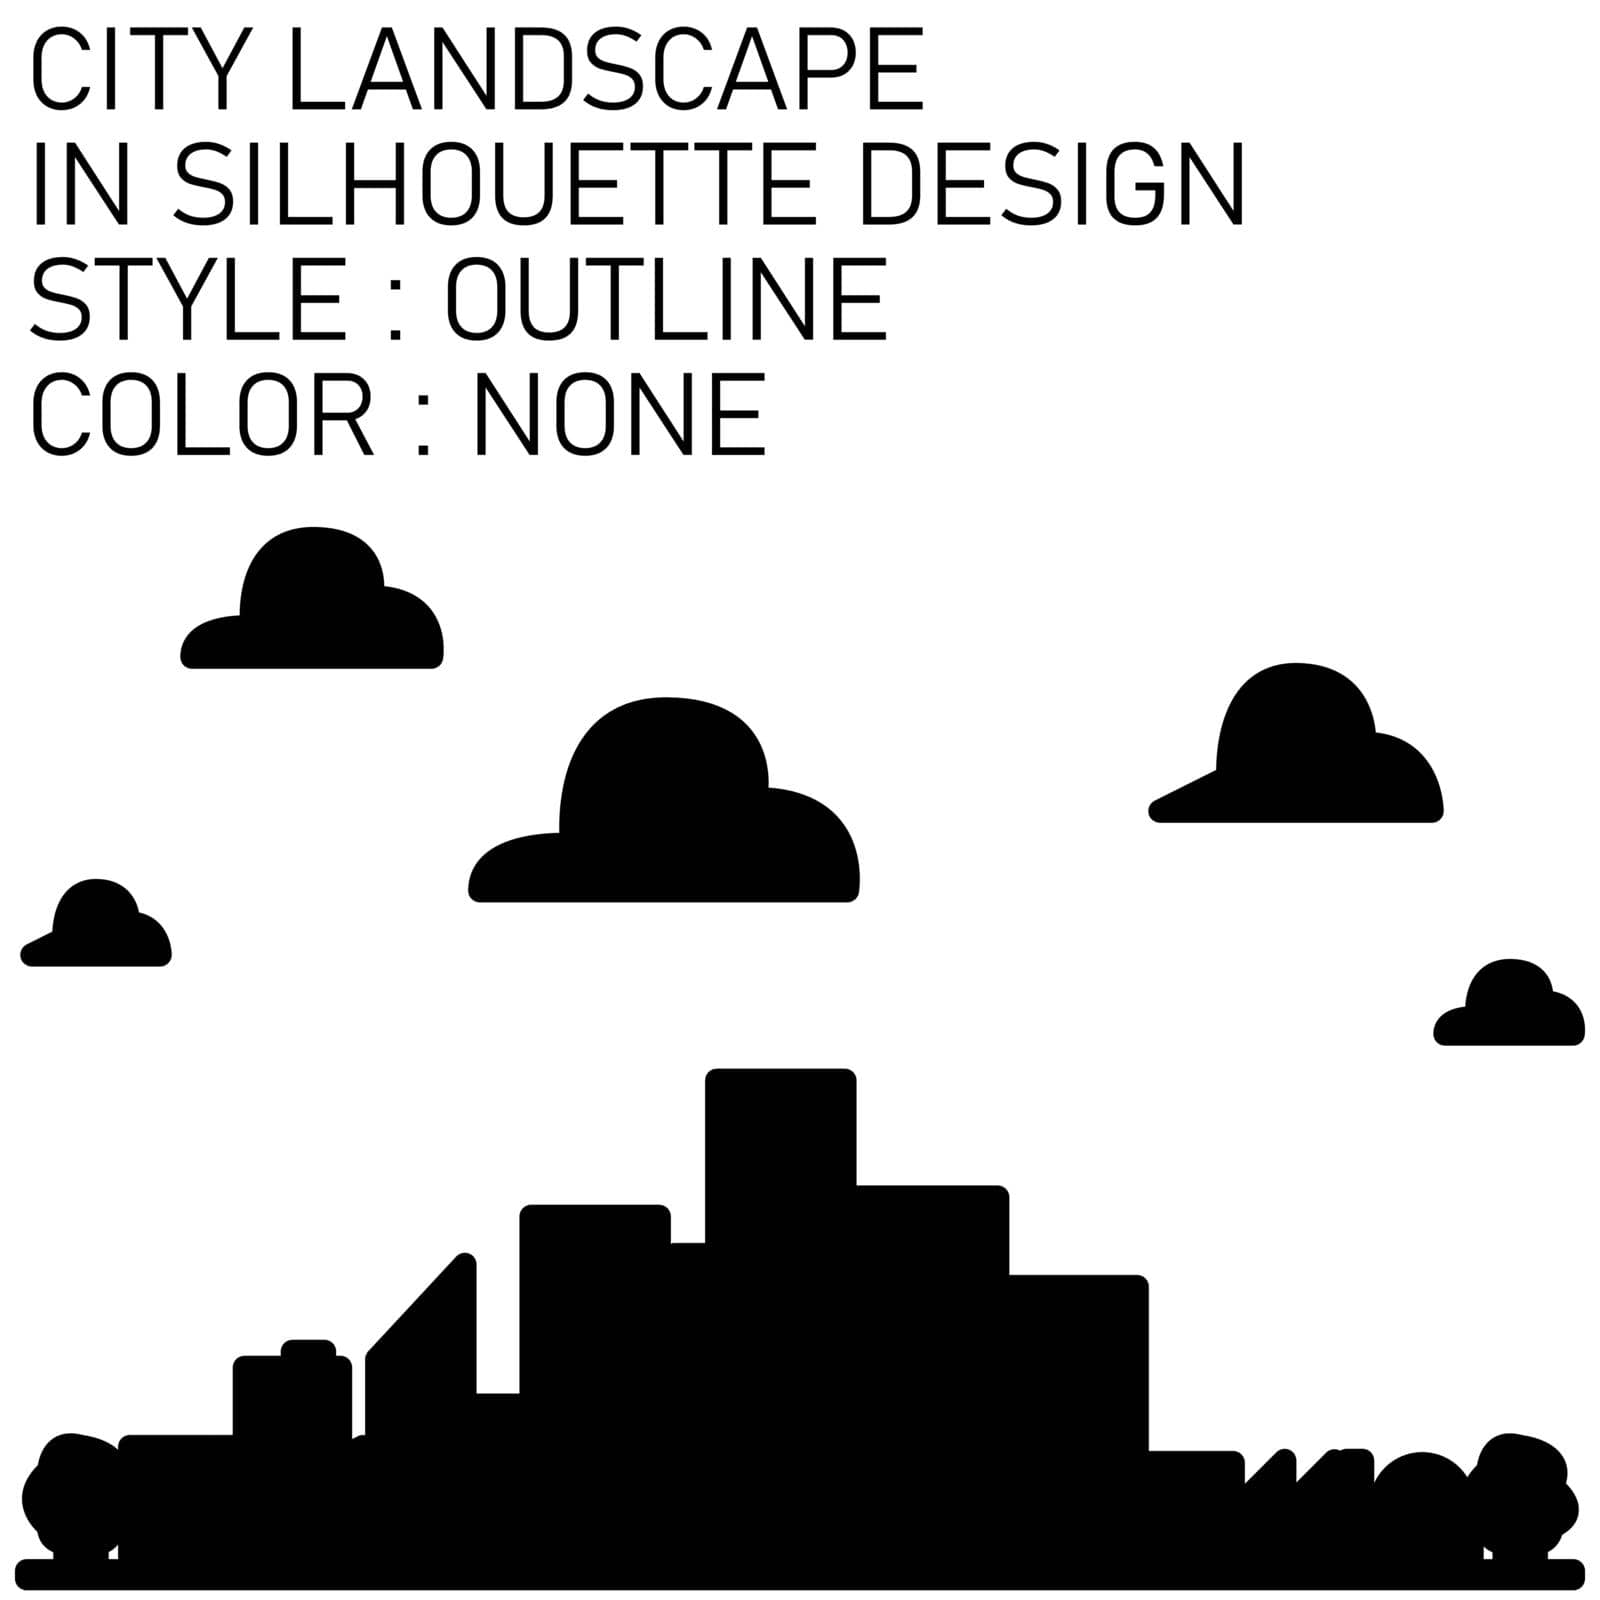 city landscape in silhouette design with black lines, black fills, black outline.